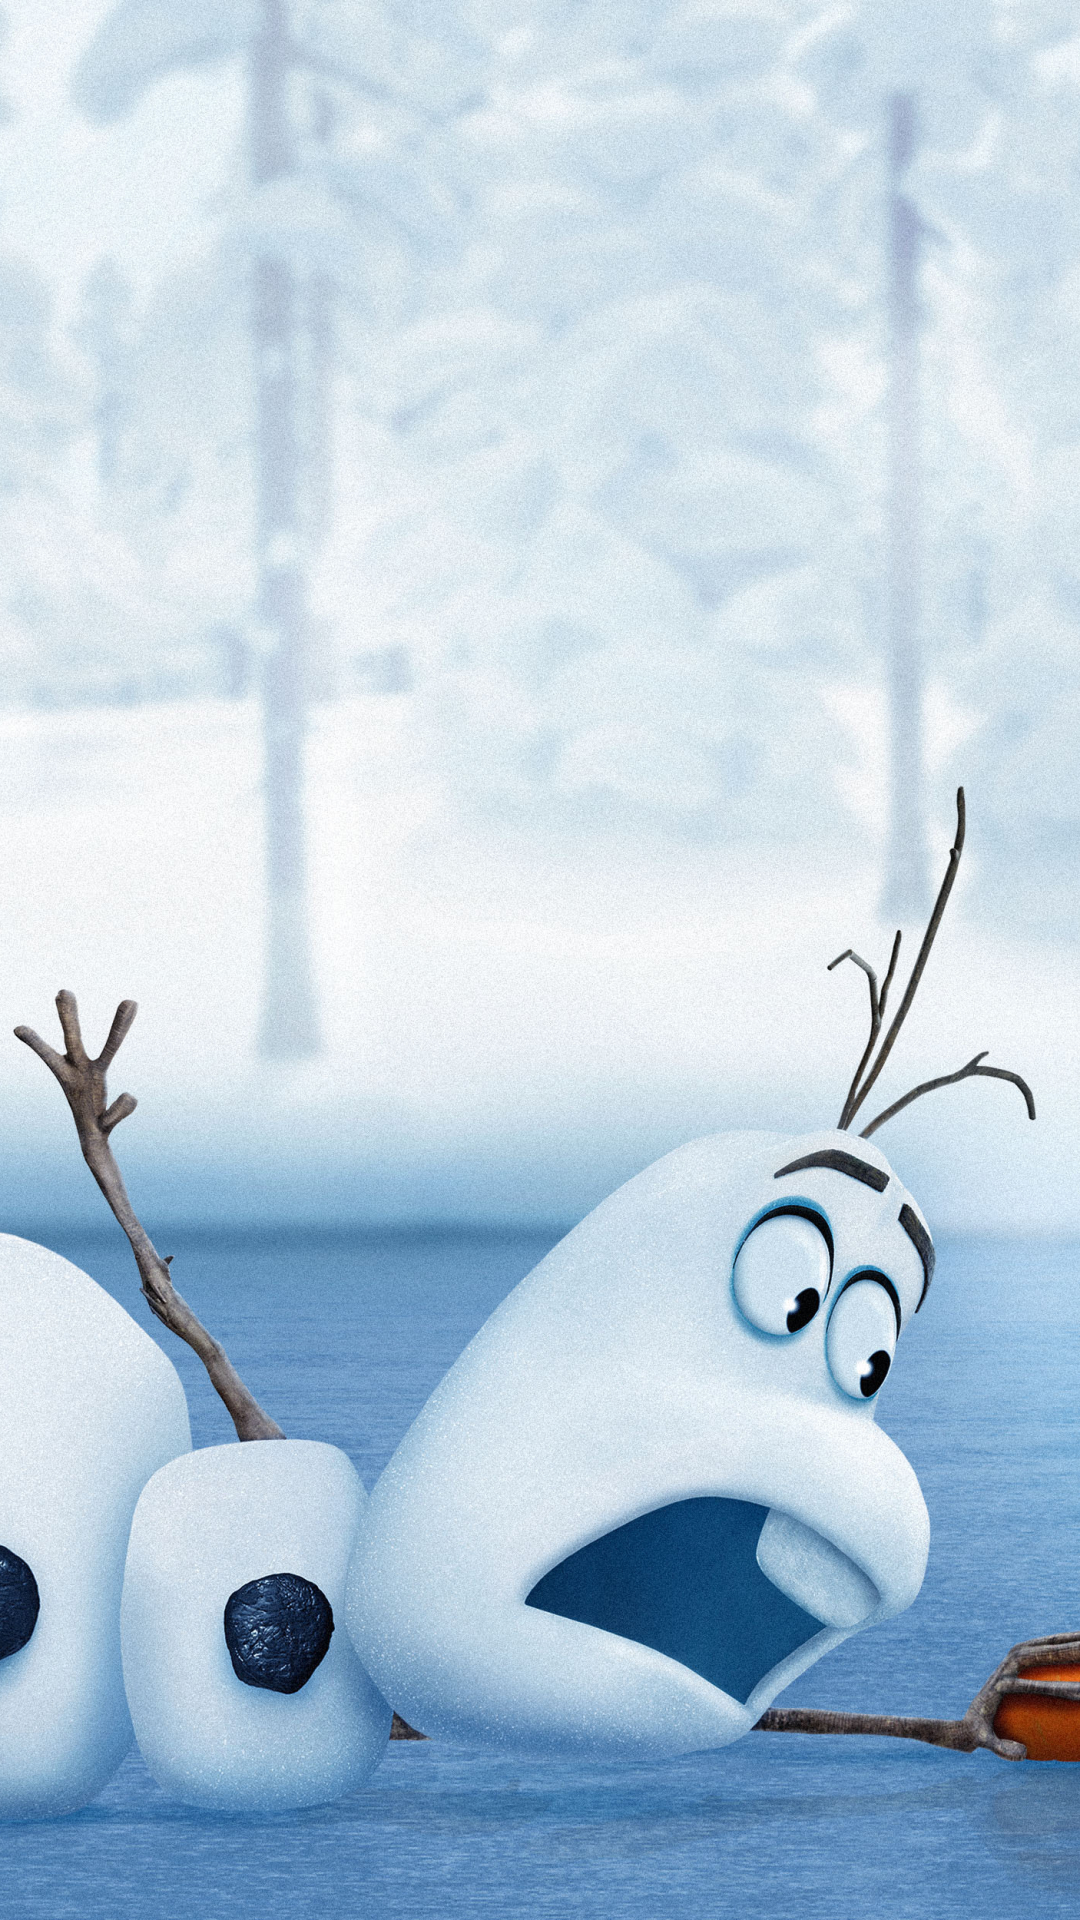 Descarga gratuita de fondo de pantalla para móvil de Películas, Frozen: El Reino Del Hielo, Congelado (Película), Olaf (Congelado).